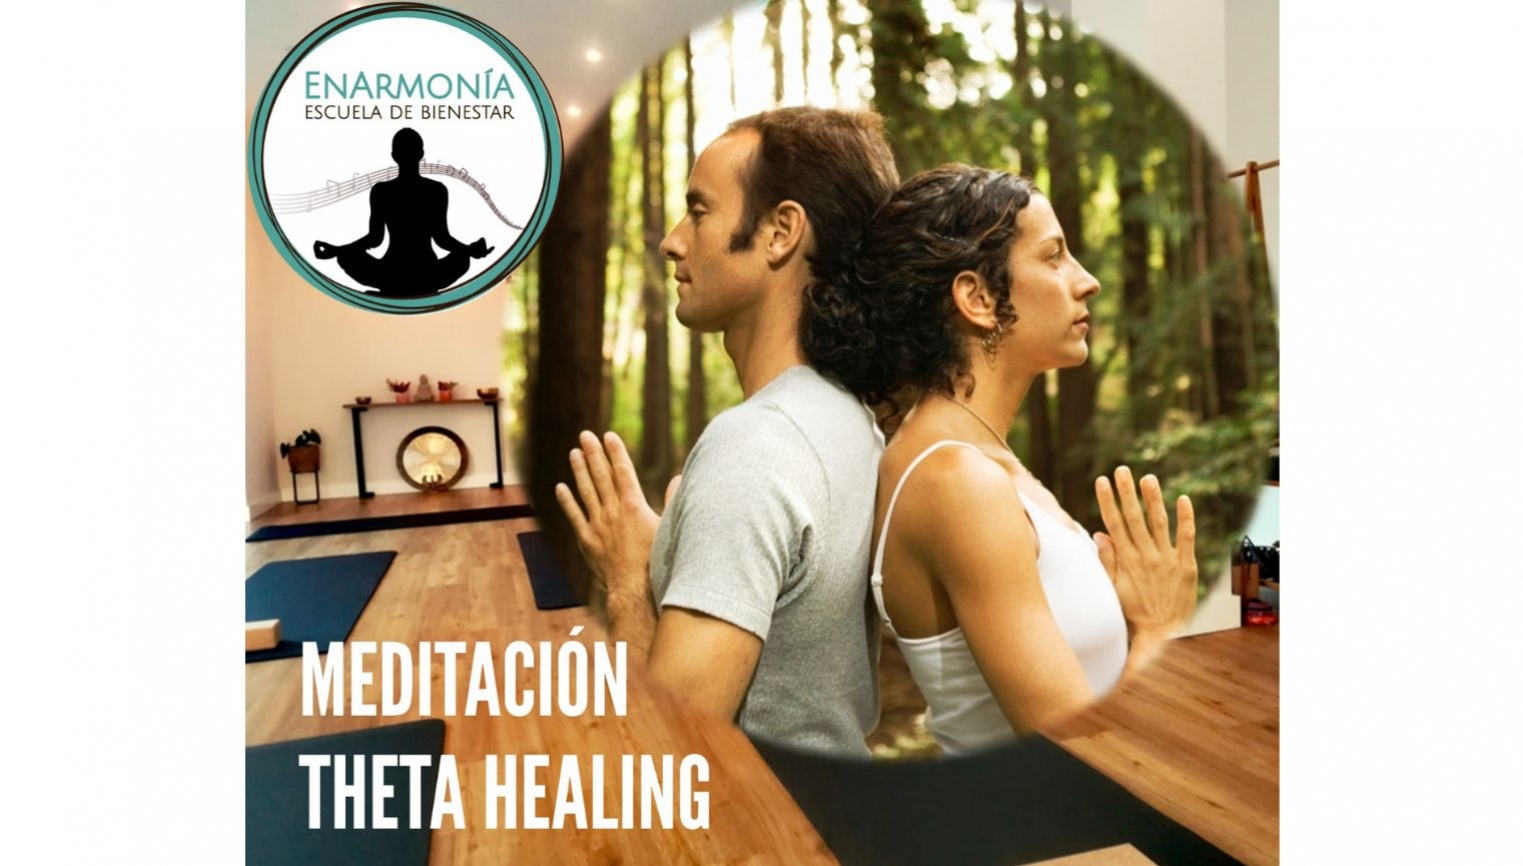 Meditación Theta Healing - foto 1/1